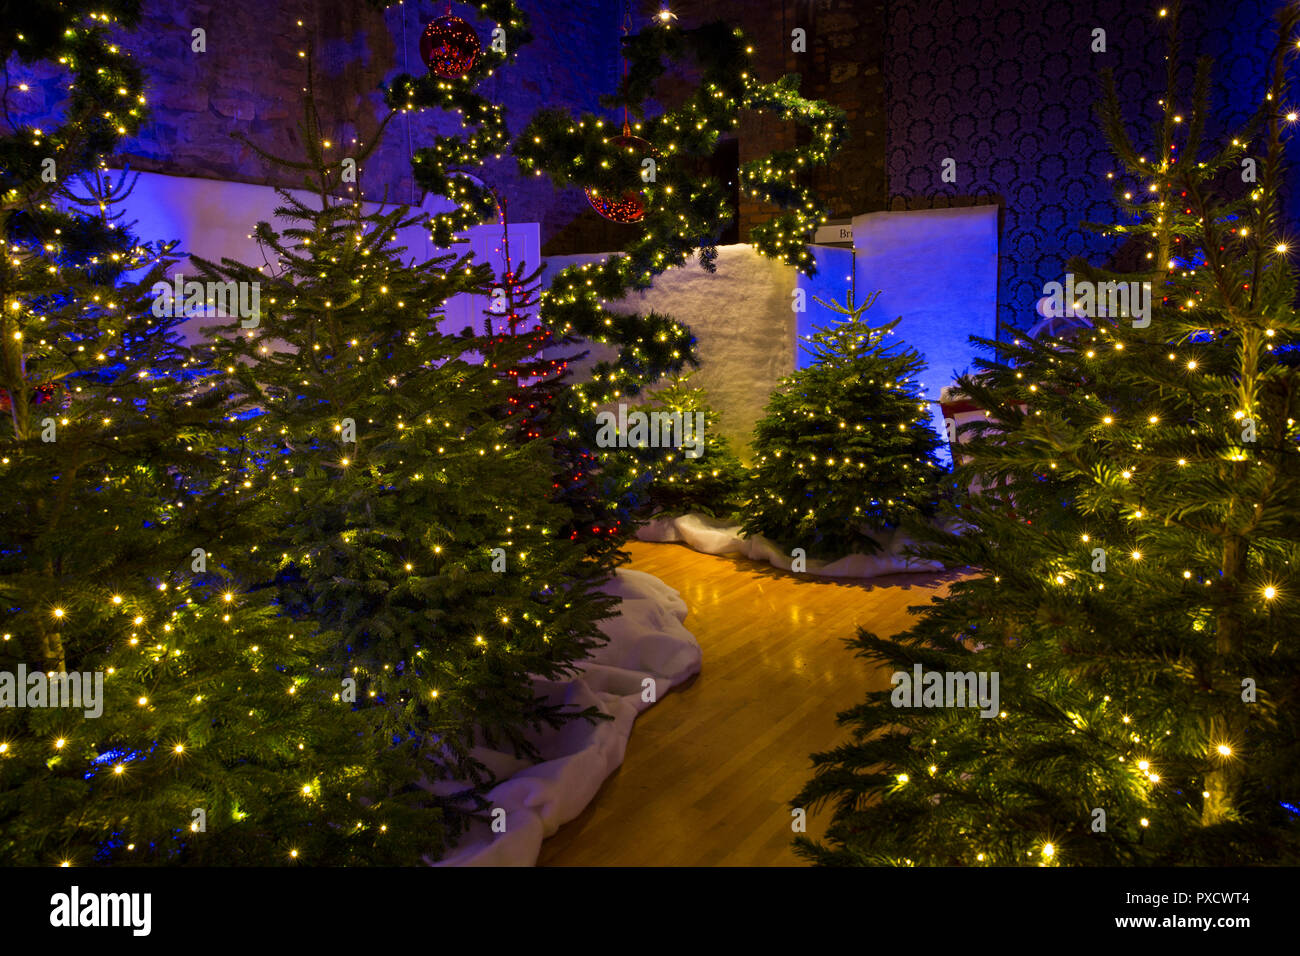 Royaume-uni, Angleterre, dans le Yorkshire, Castle Howard à Noël, le Père Noël est magique, le jardin rempli d'arbres de Noël grotto Banque D'Images